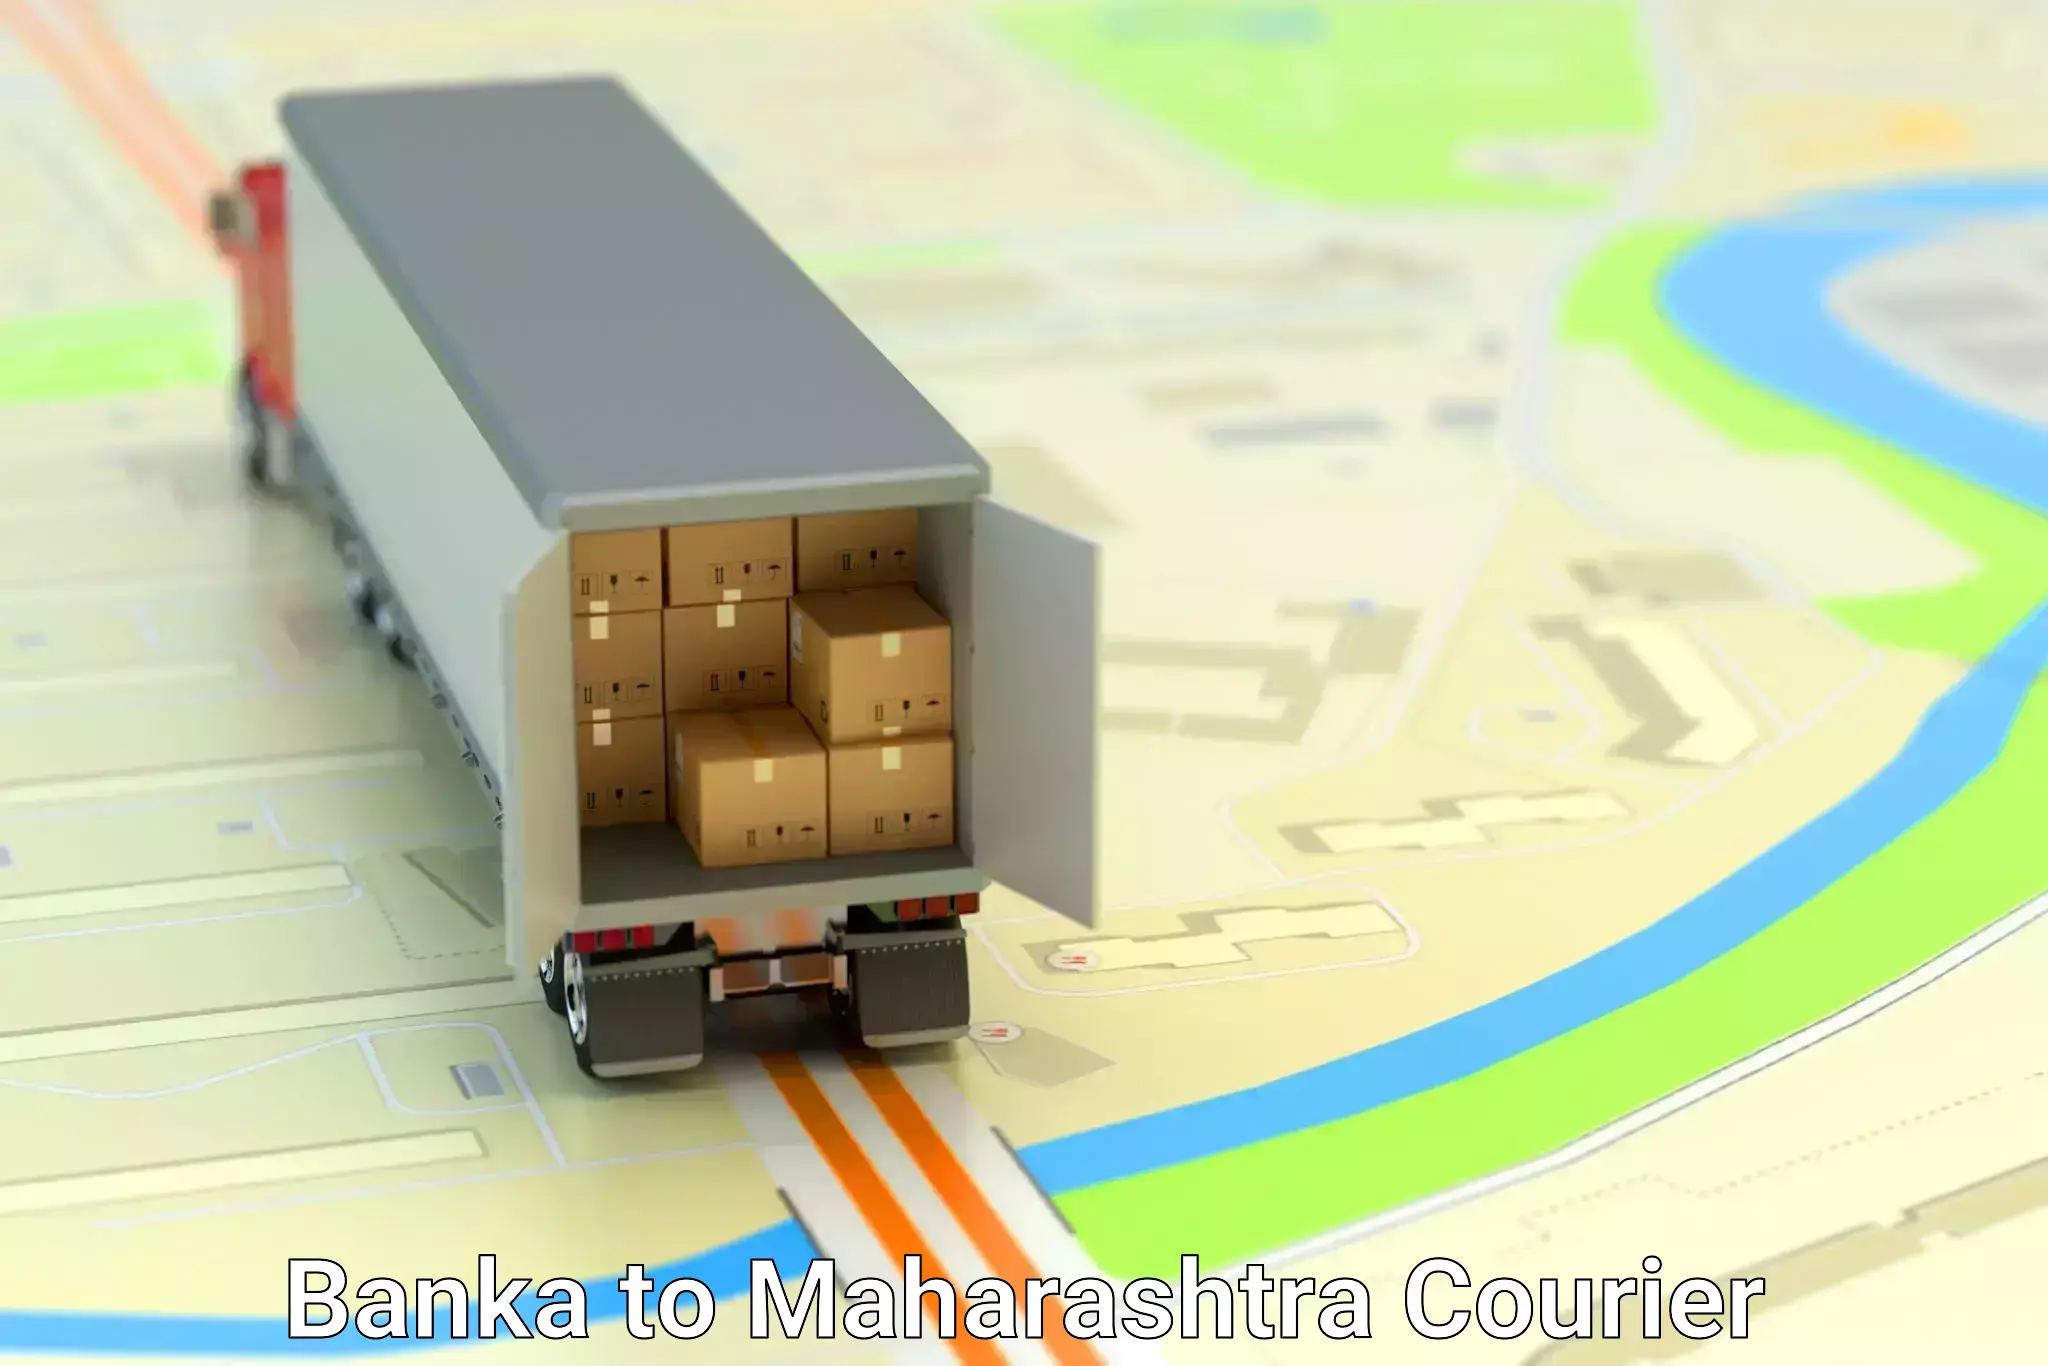 Furniture moving experts Banka to Kudus